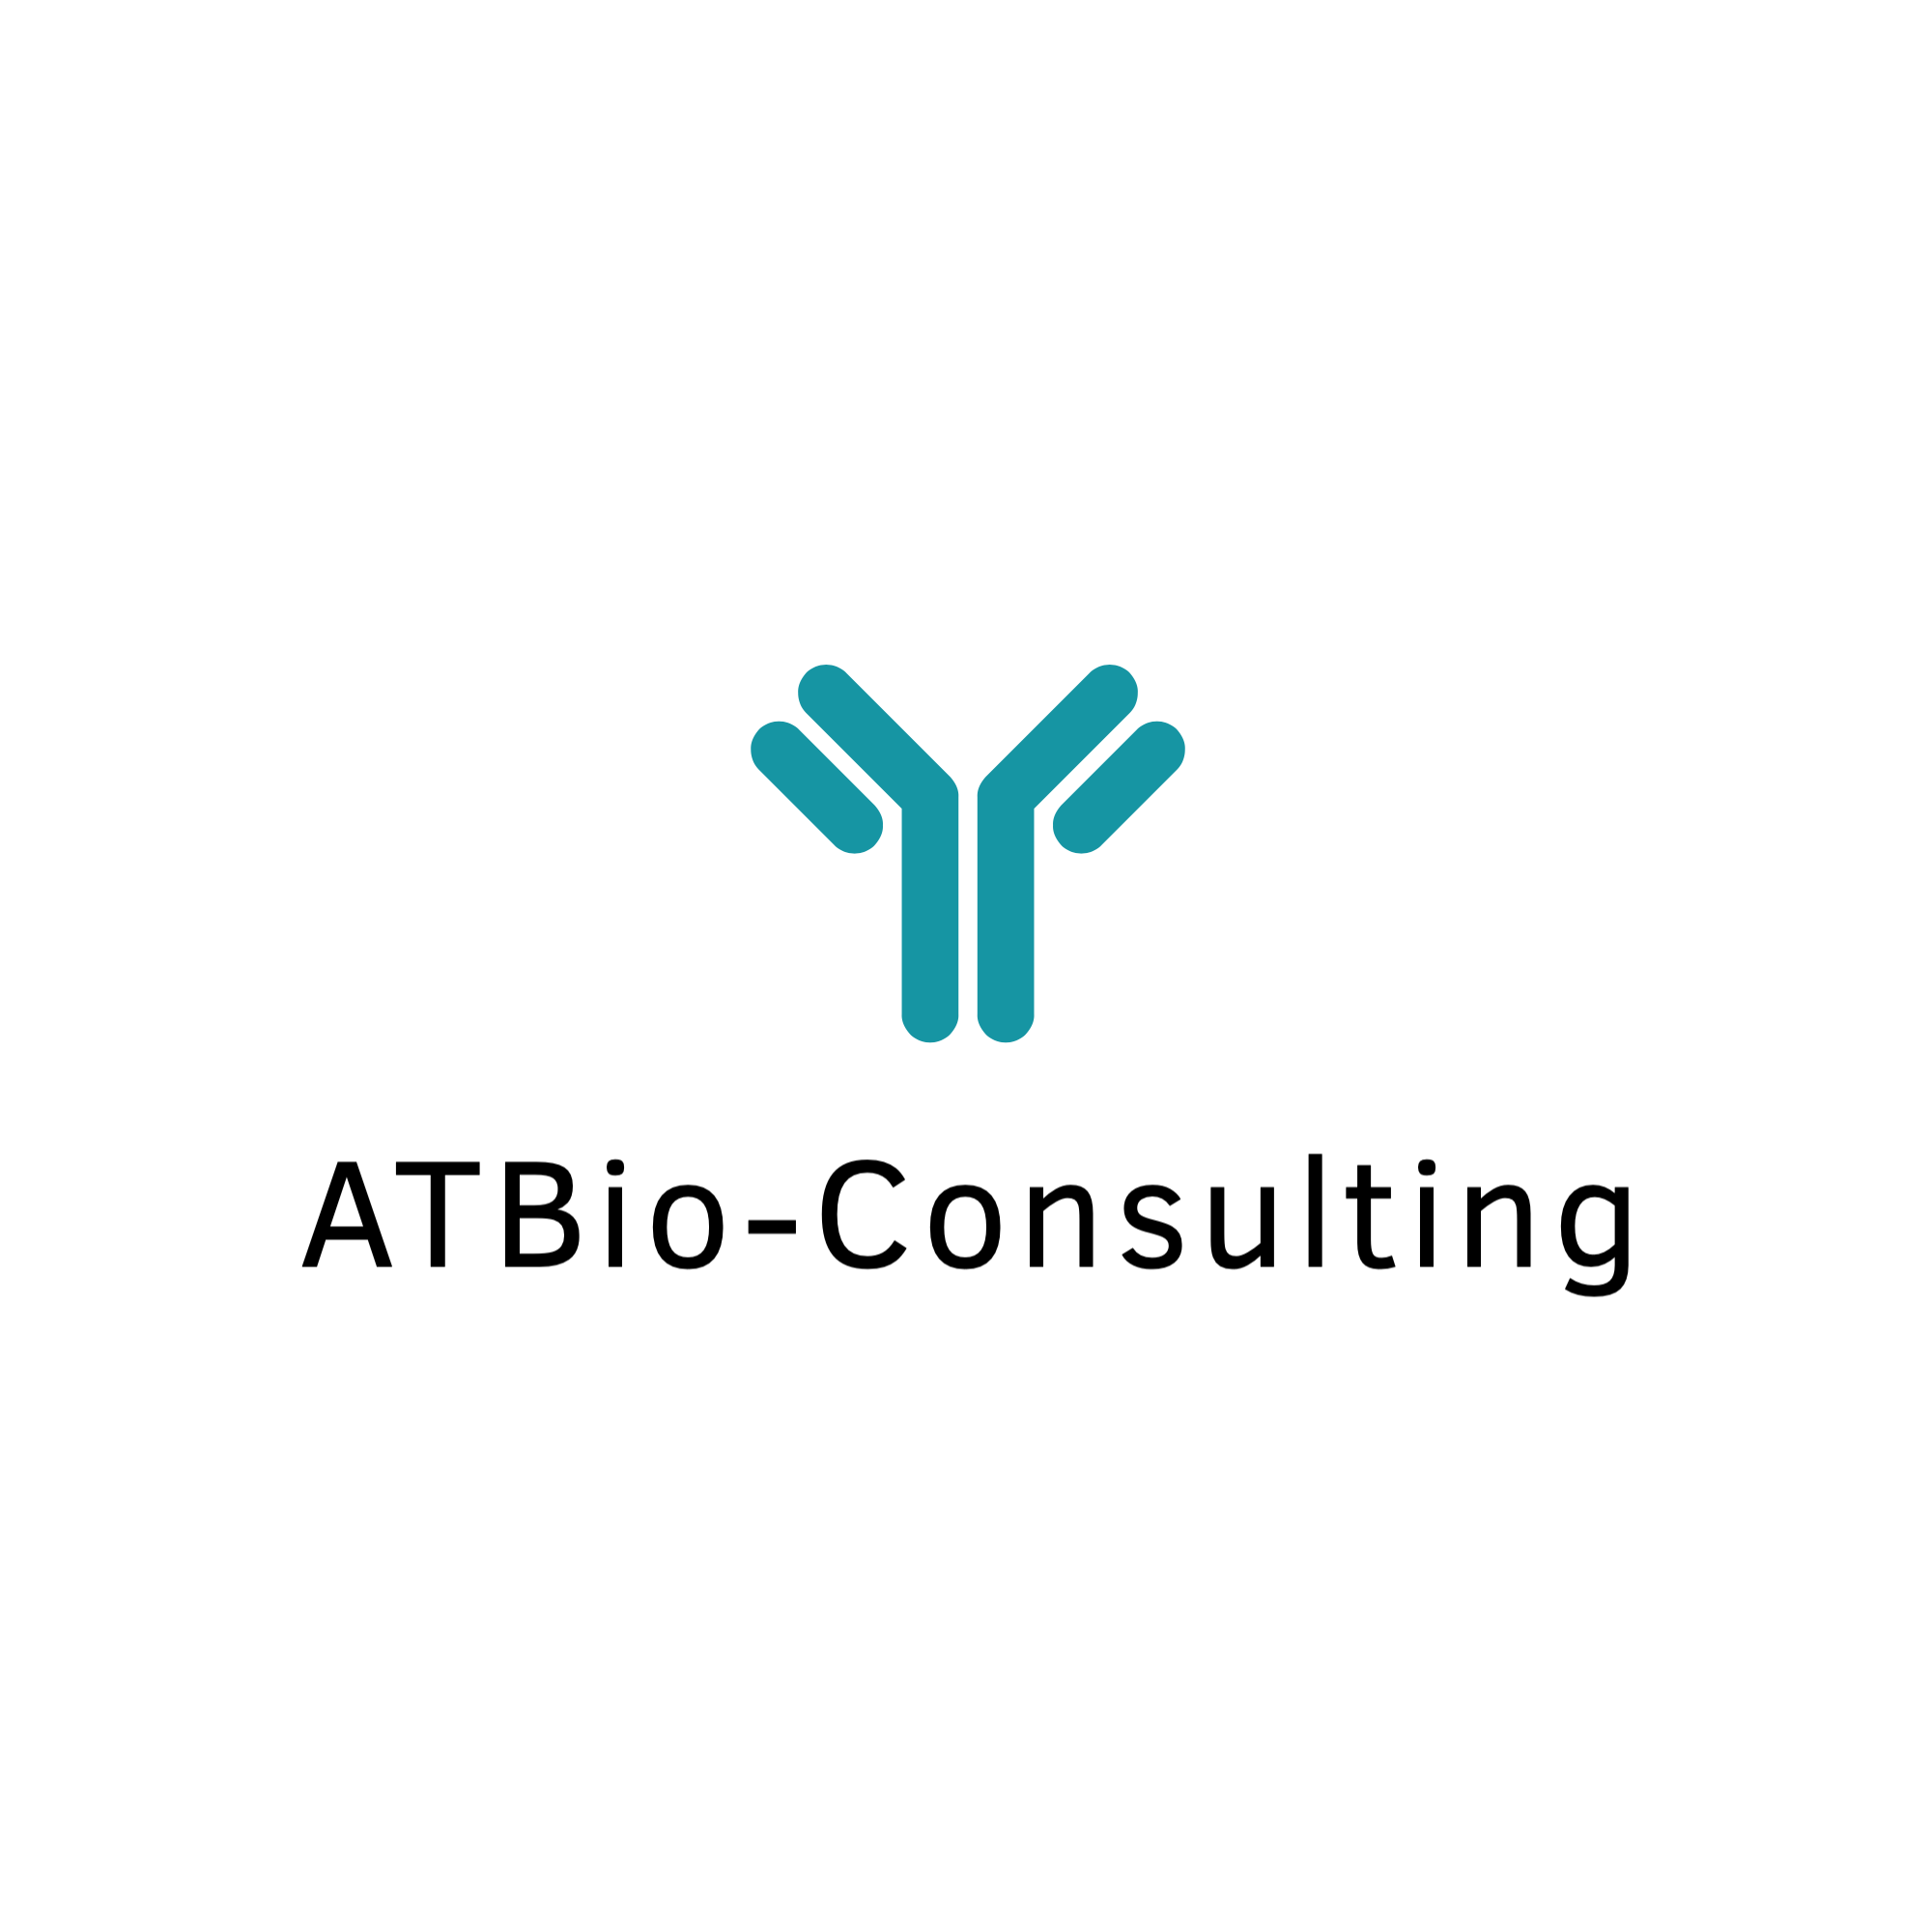 ATBio-Consulting